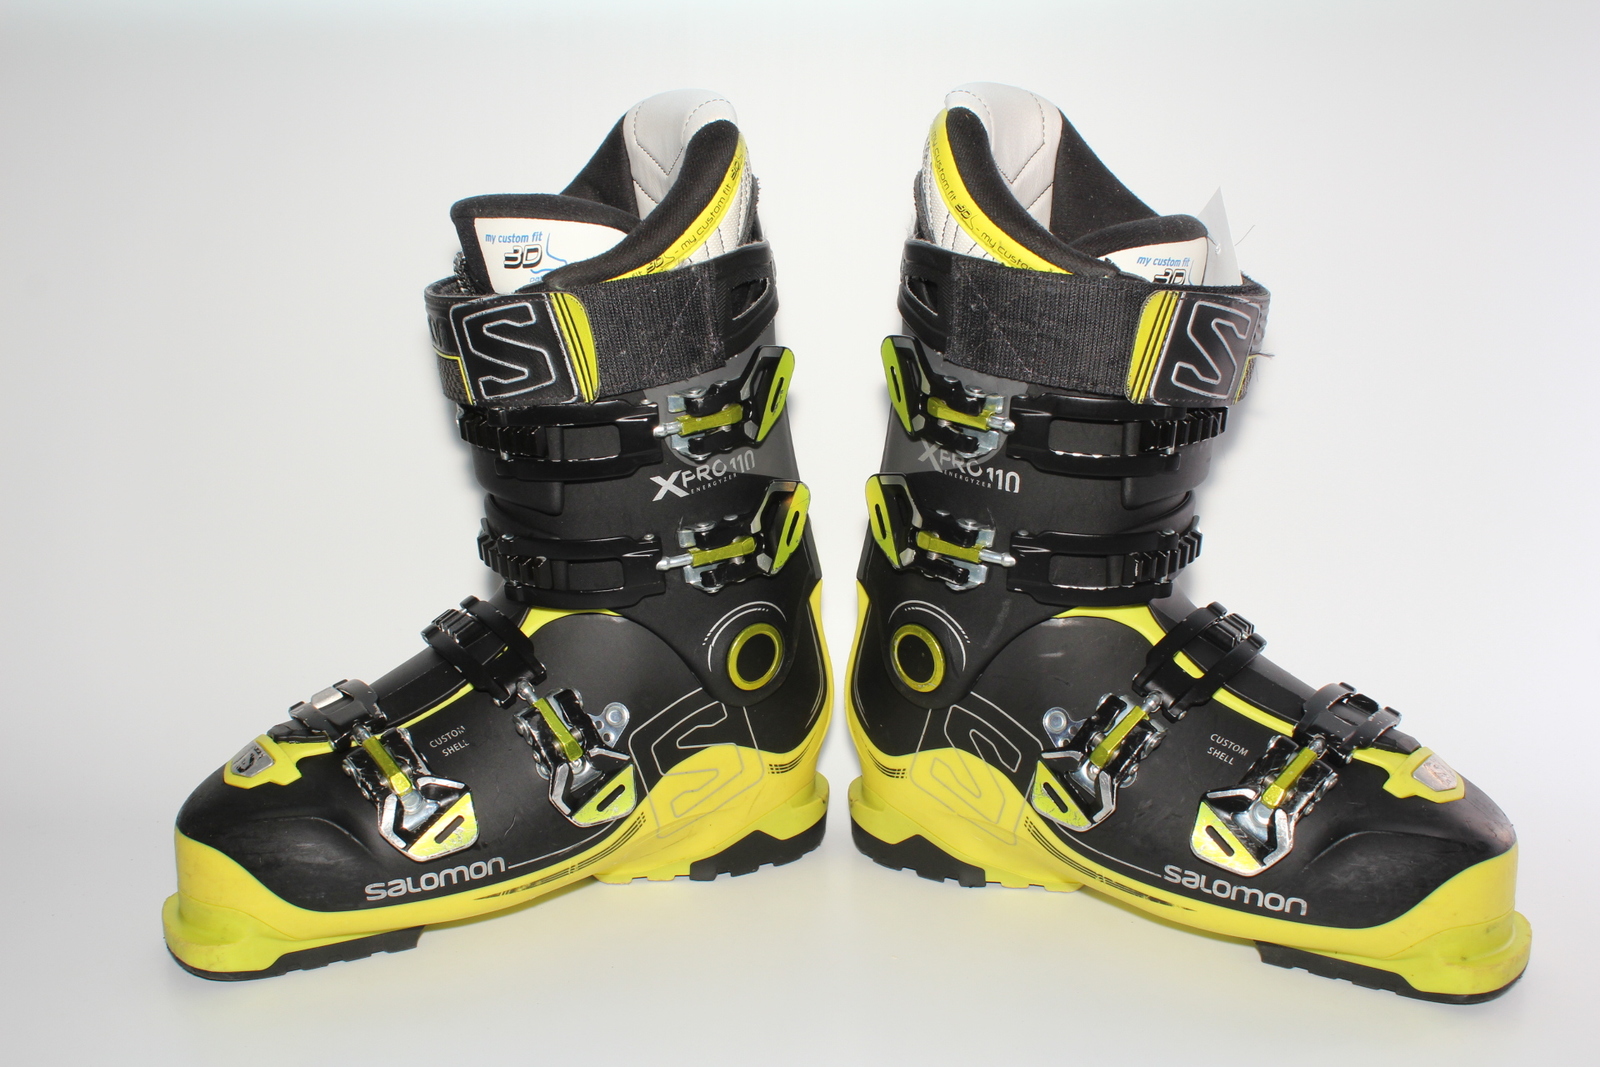 Lyžařské boty Salomon X Pro 110 vel. EU42.5 flexe 110